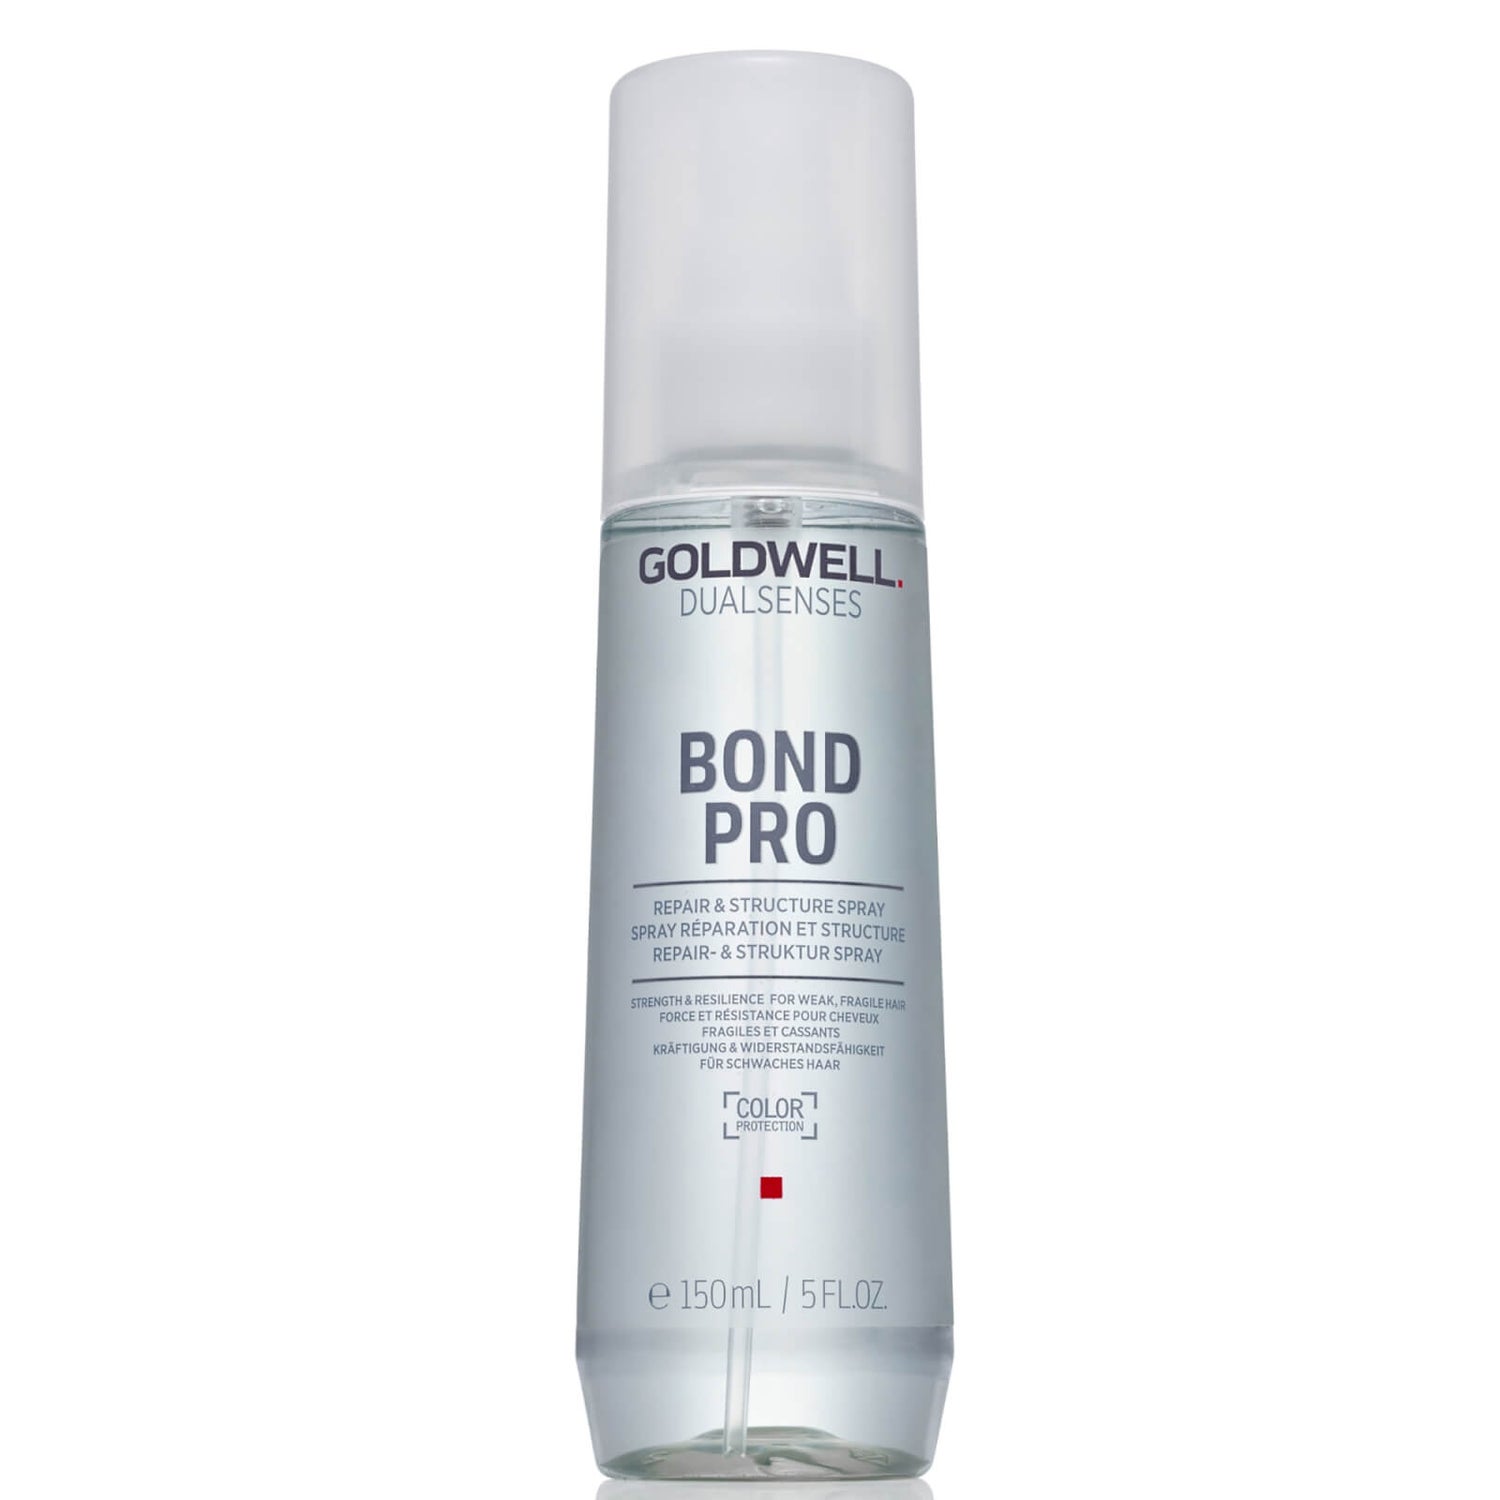 BondPro+ Spray Riparatore e Strutturante Goldwell 150ml